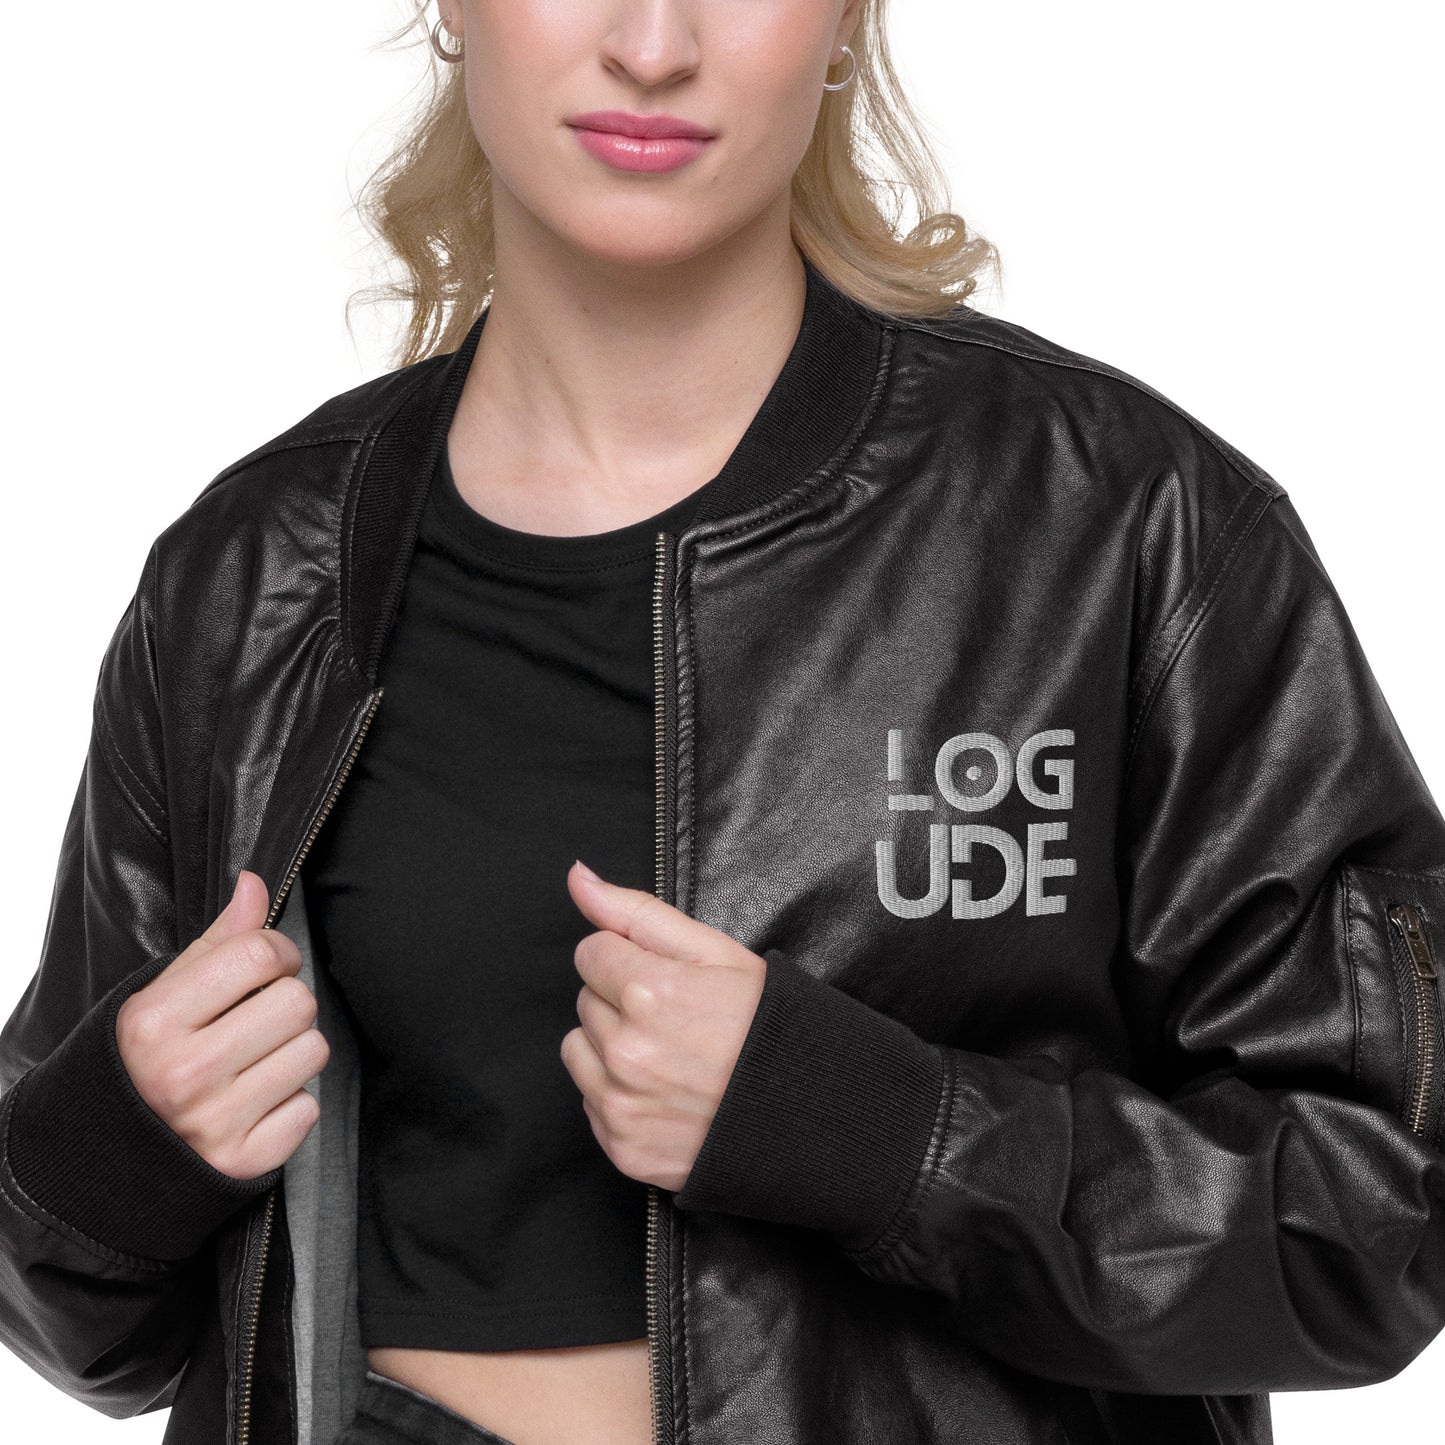 Logude Leather Bomber Jacket